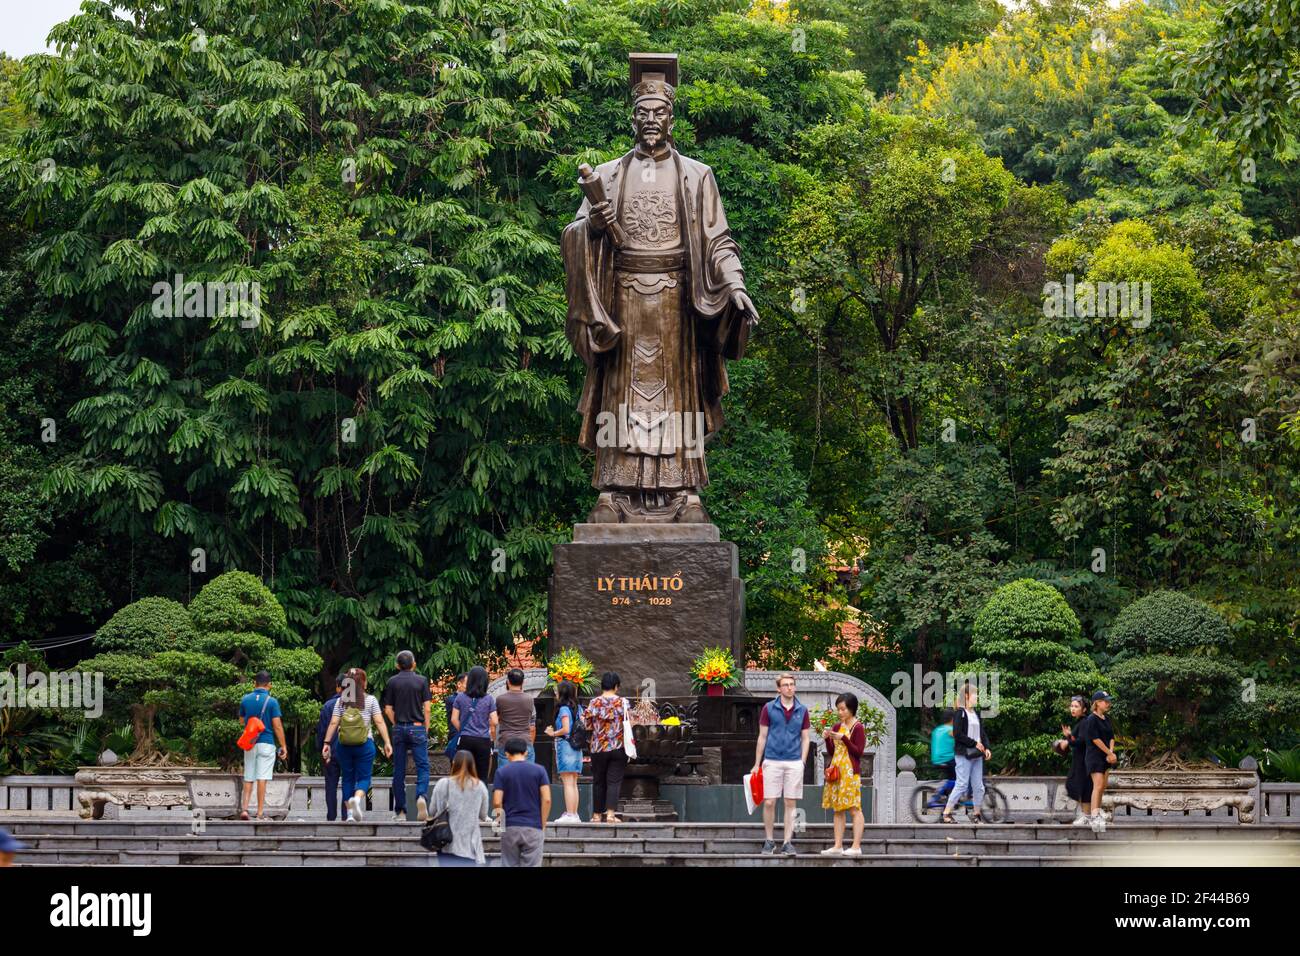 The Confucius Statue of Hanoi in Vietnam Stock Photo